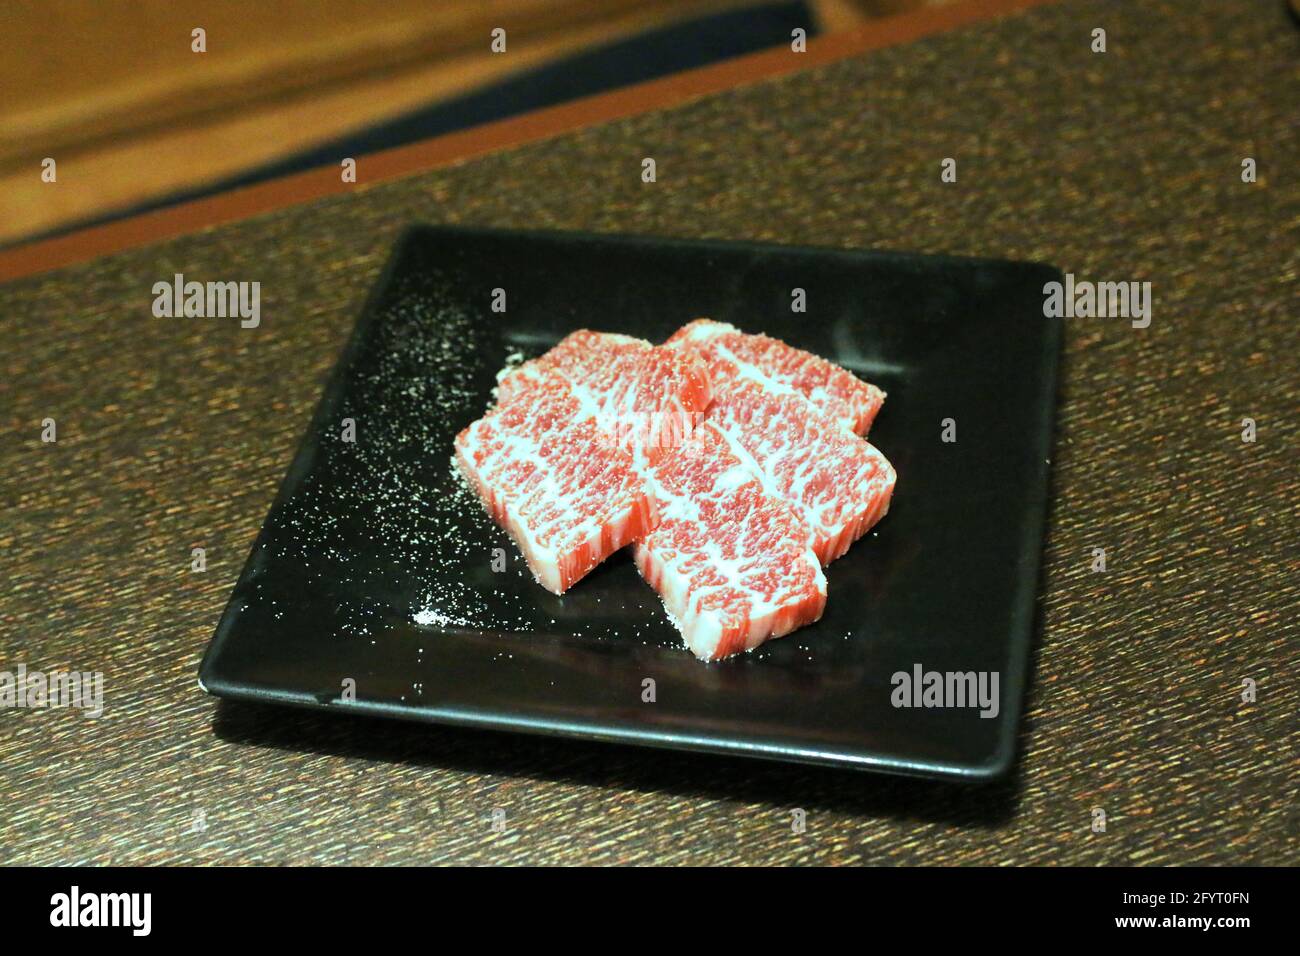 Tranches de bœuf Wagyu/Kobe brut prêtes pour le barbecue Banque D'Images